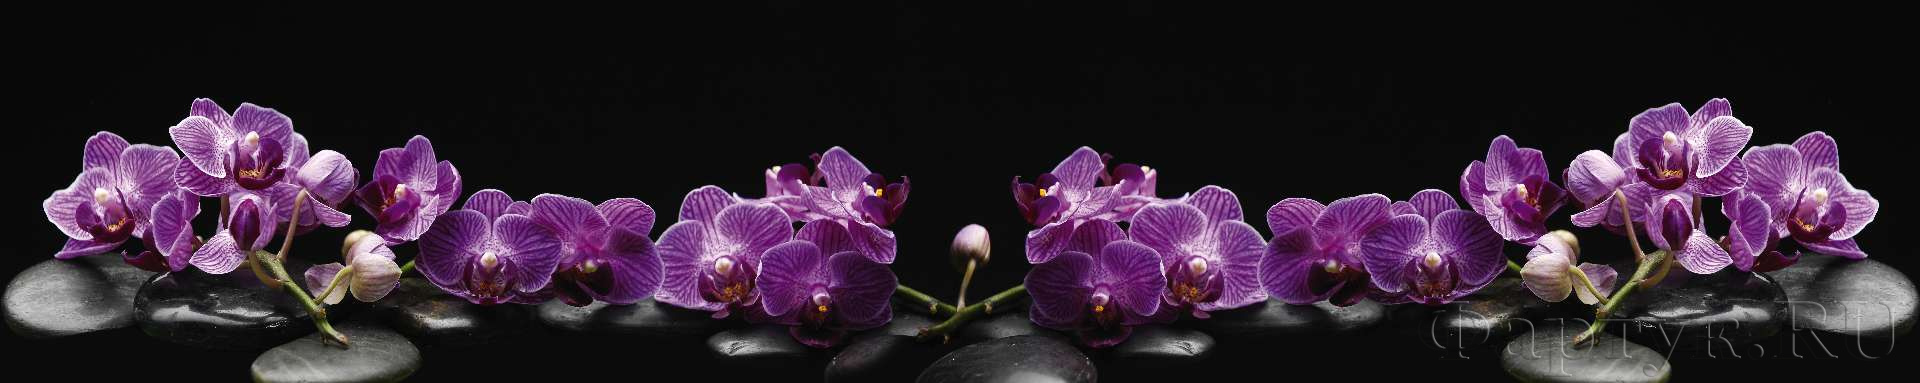 Ветки орхидеи на камнях